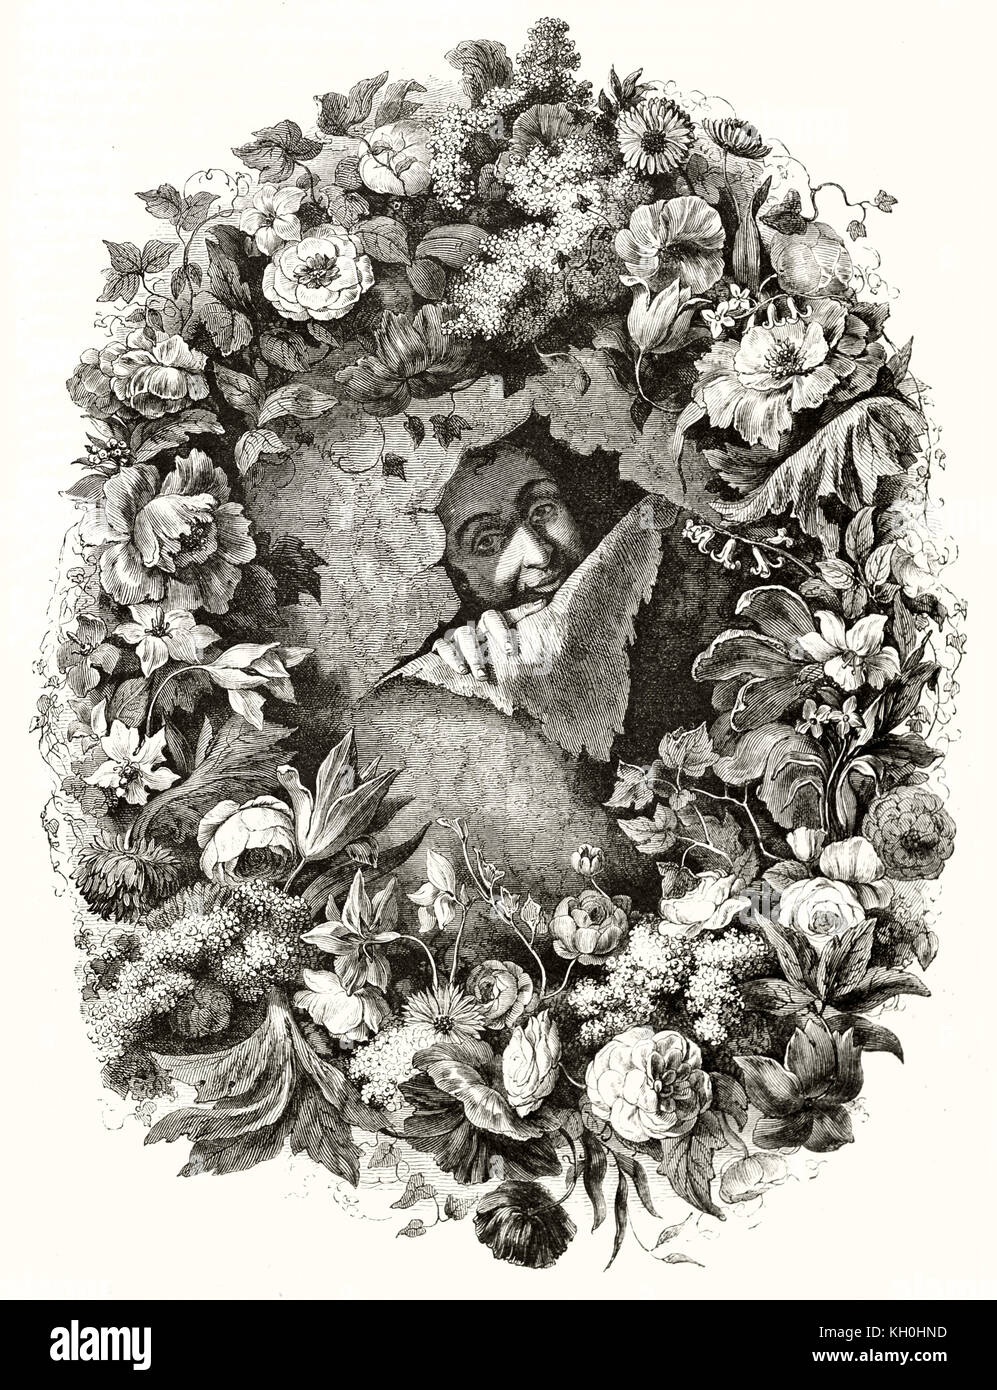 Riproduzione di Nicolas Van der Brach Self-portrait (fiori pittore). Publ. su Magasin pittoresco, Parigi, 1847 Foto Stock